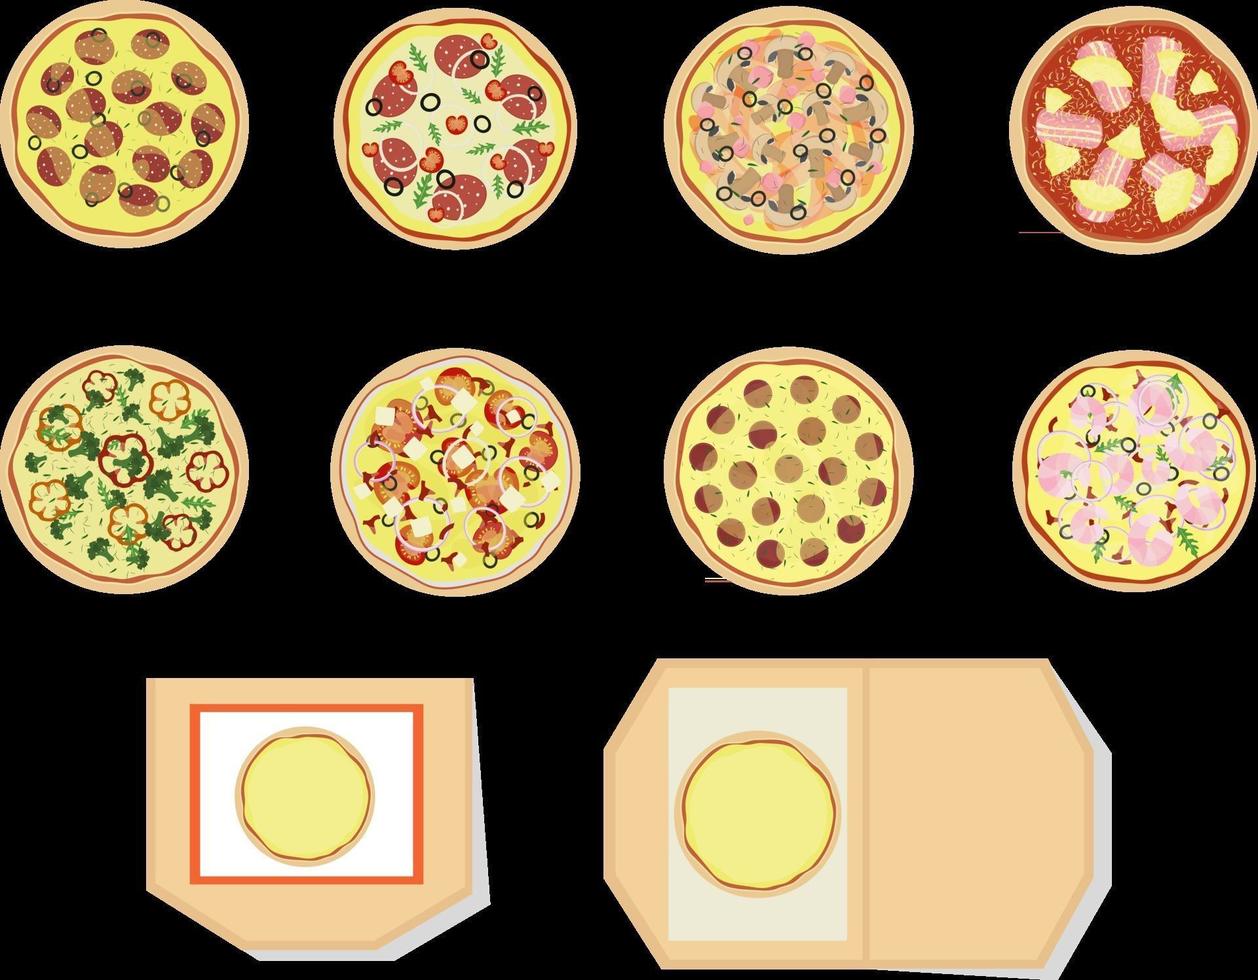 set pizza di diversi tipi vista dall'alto aperto e chiuso pizza box illustrazione vettoriale